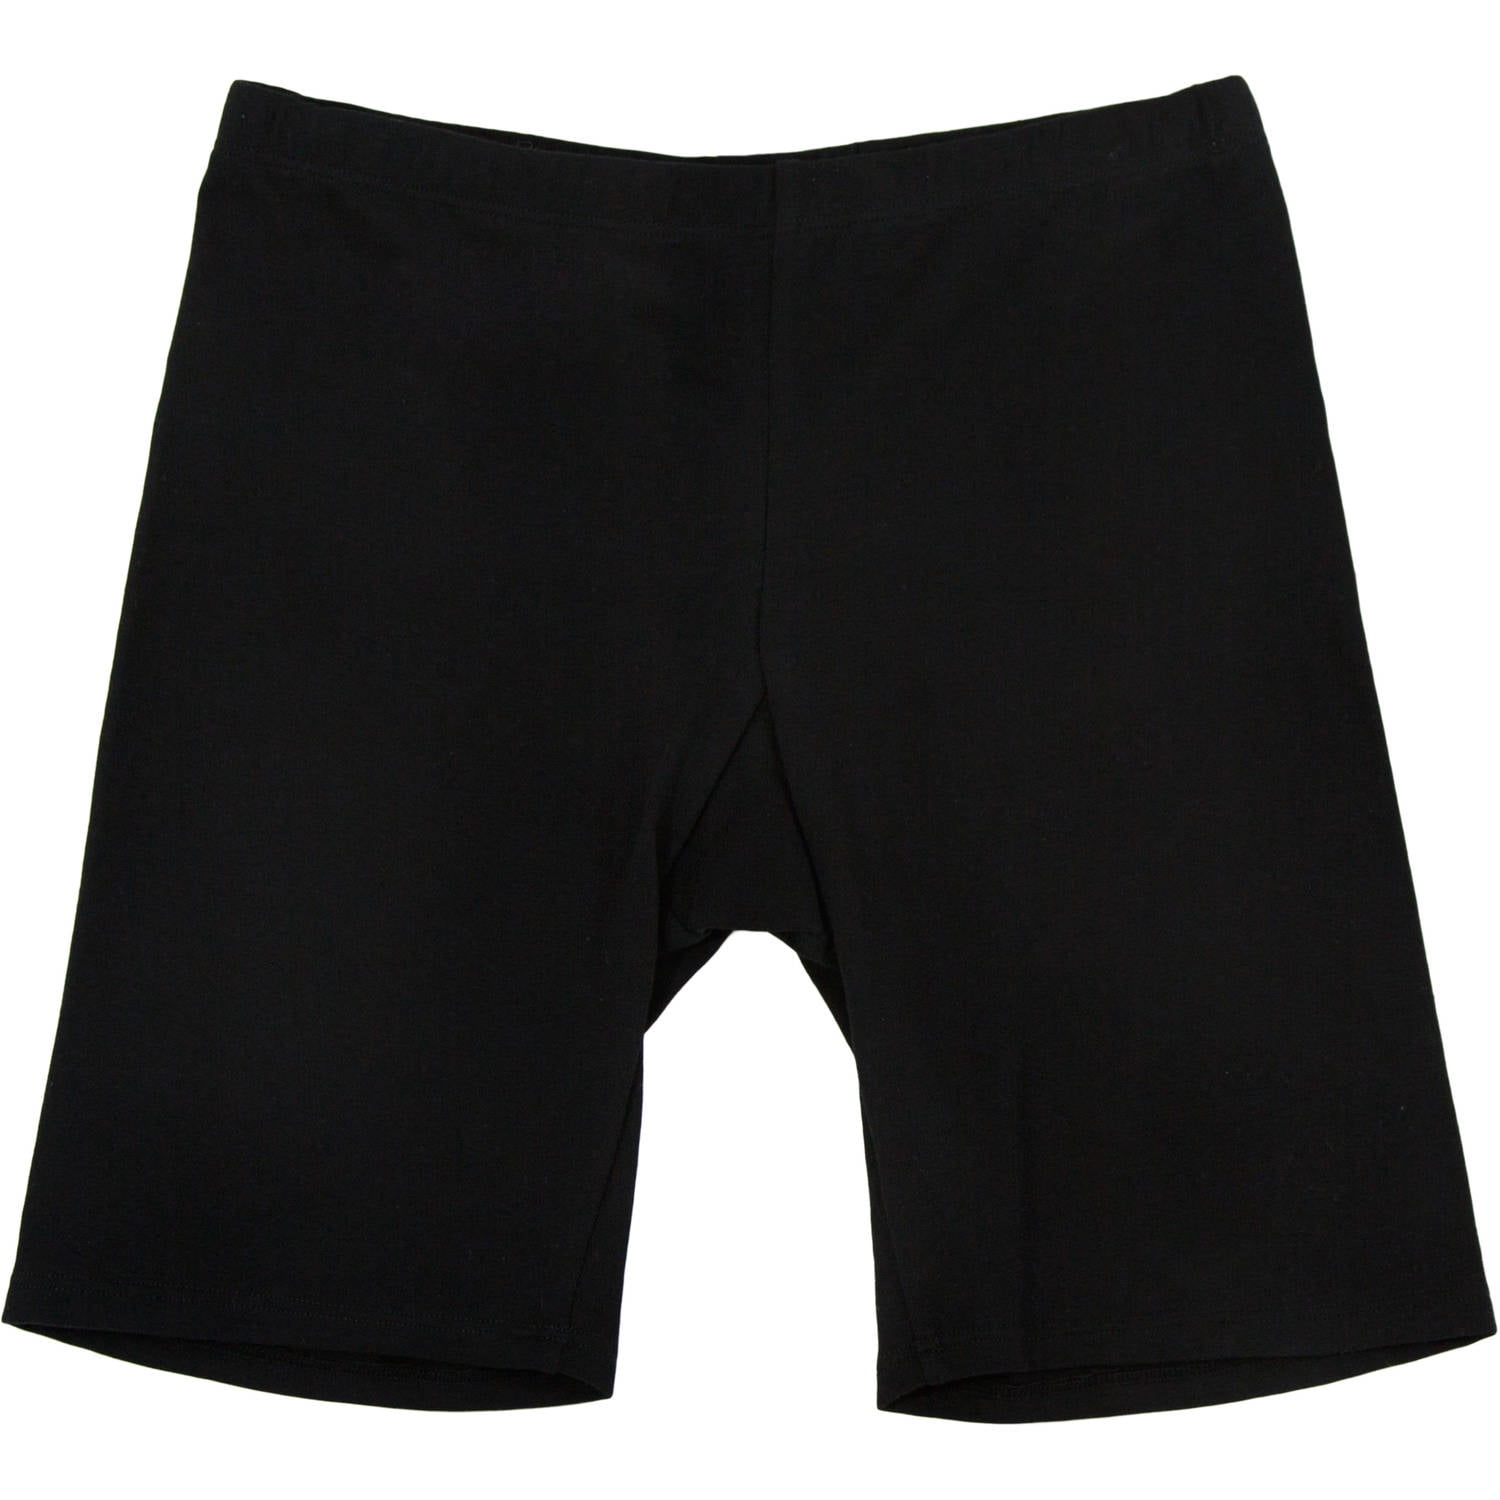 Girls Cotton Under-Skirt Long Short, FT541 - Walmart.com